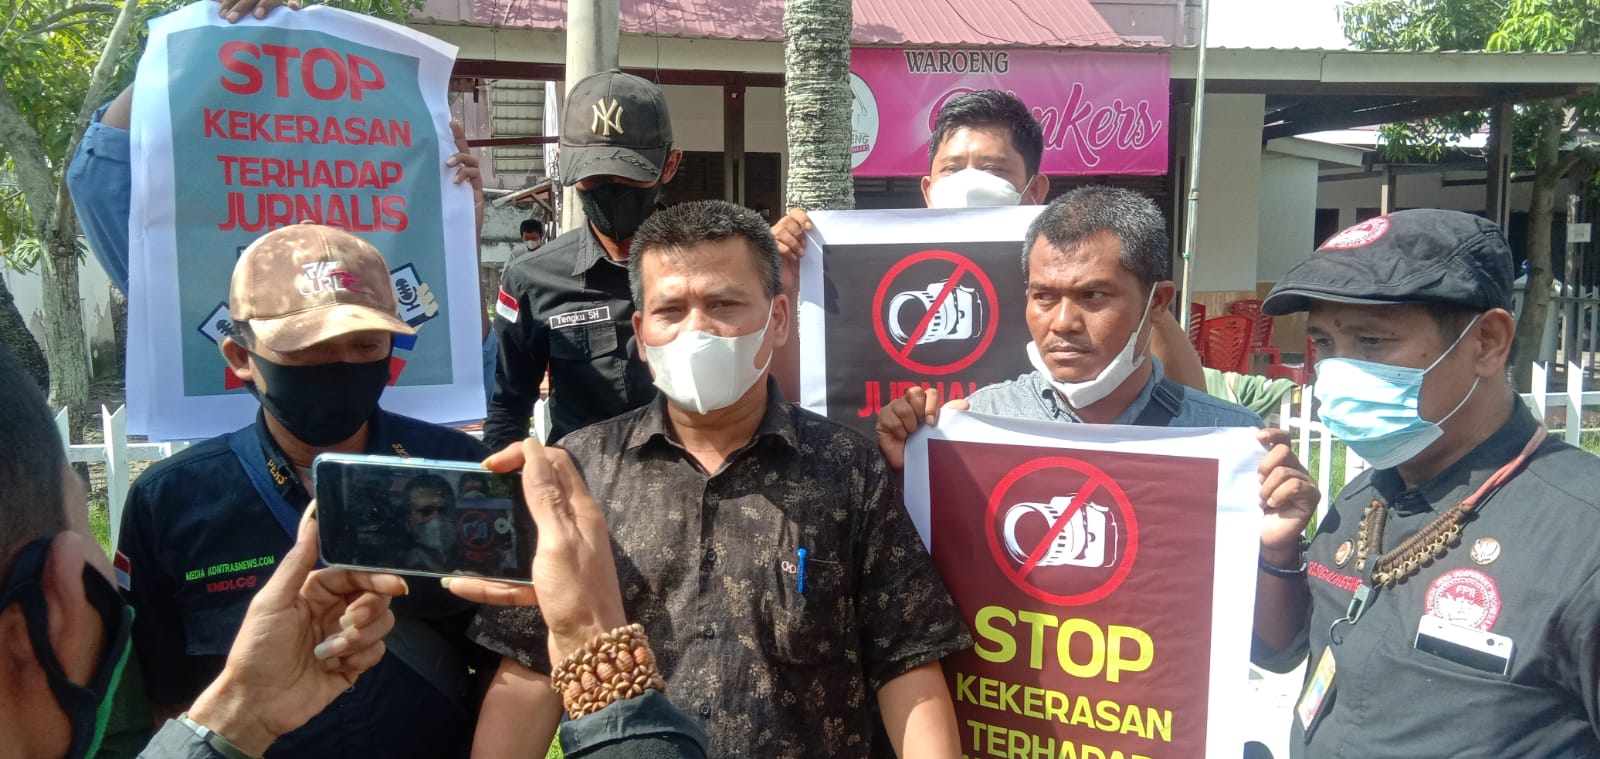 Ketua FPII Riau: Polri Harus Serius Mengungkap Kasus Penganiayaan Wartawan di Kota Dumai